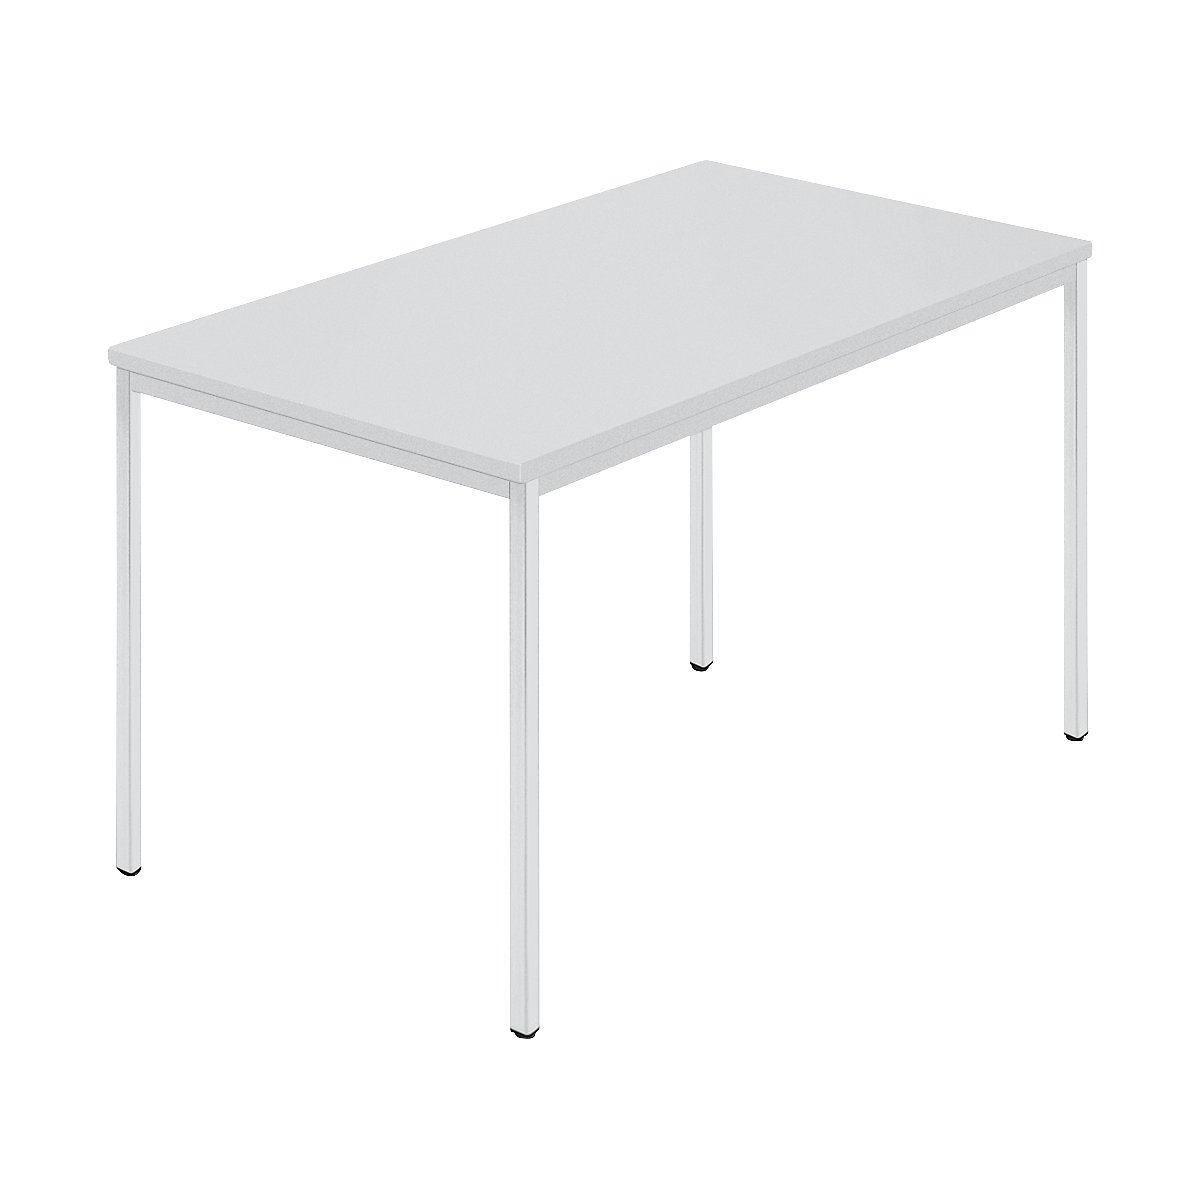 Rechthoekige tafel, vierkante buis met coating, b x d = 1200 x 800 mm, grijs / grijs-7